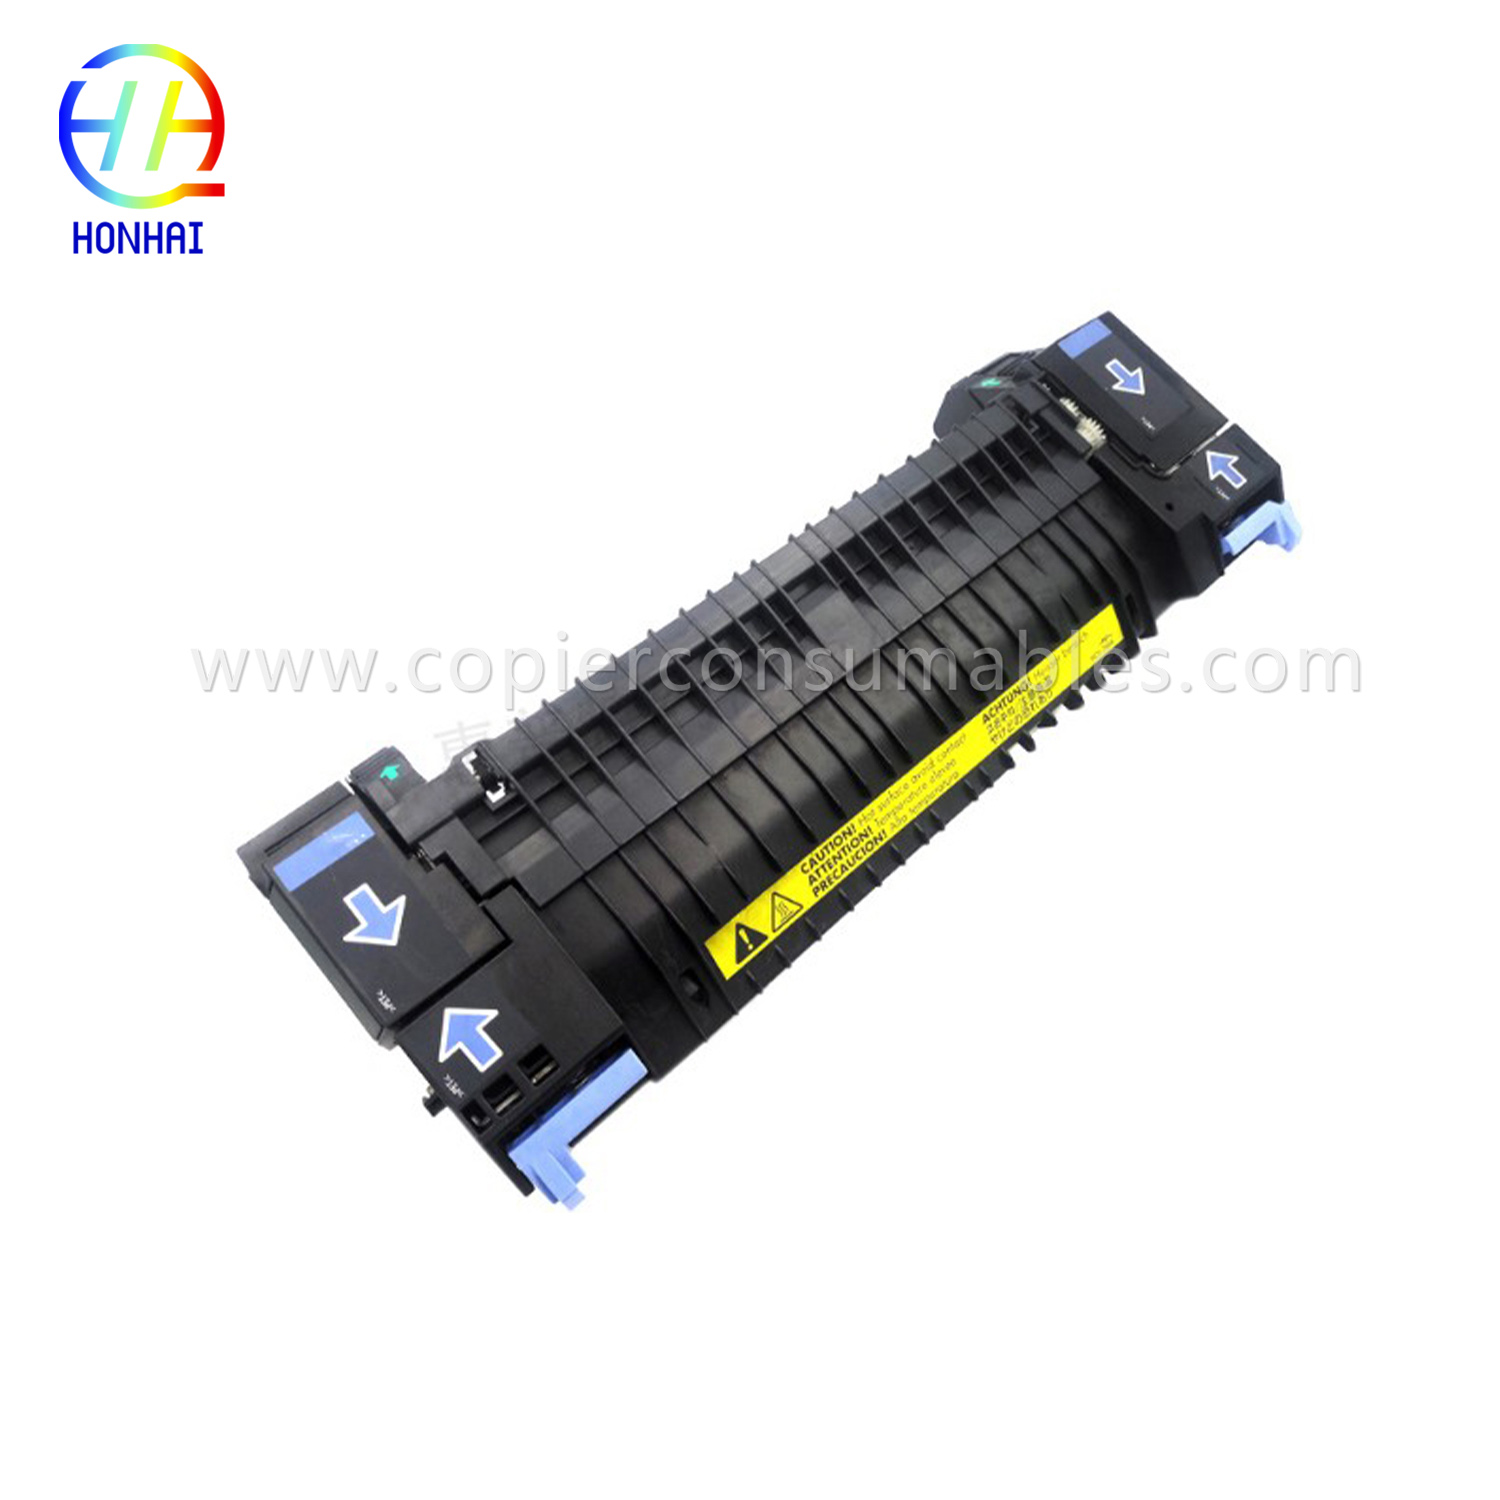 Muntatge del fusor per a HP Color LaserJet 2700 3000 3600 3800 CP3505 RM1-4348 RM1-2763 RM1-2665